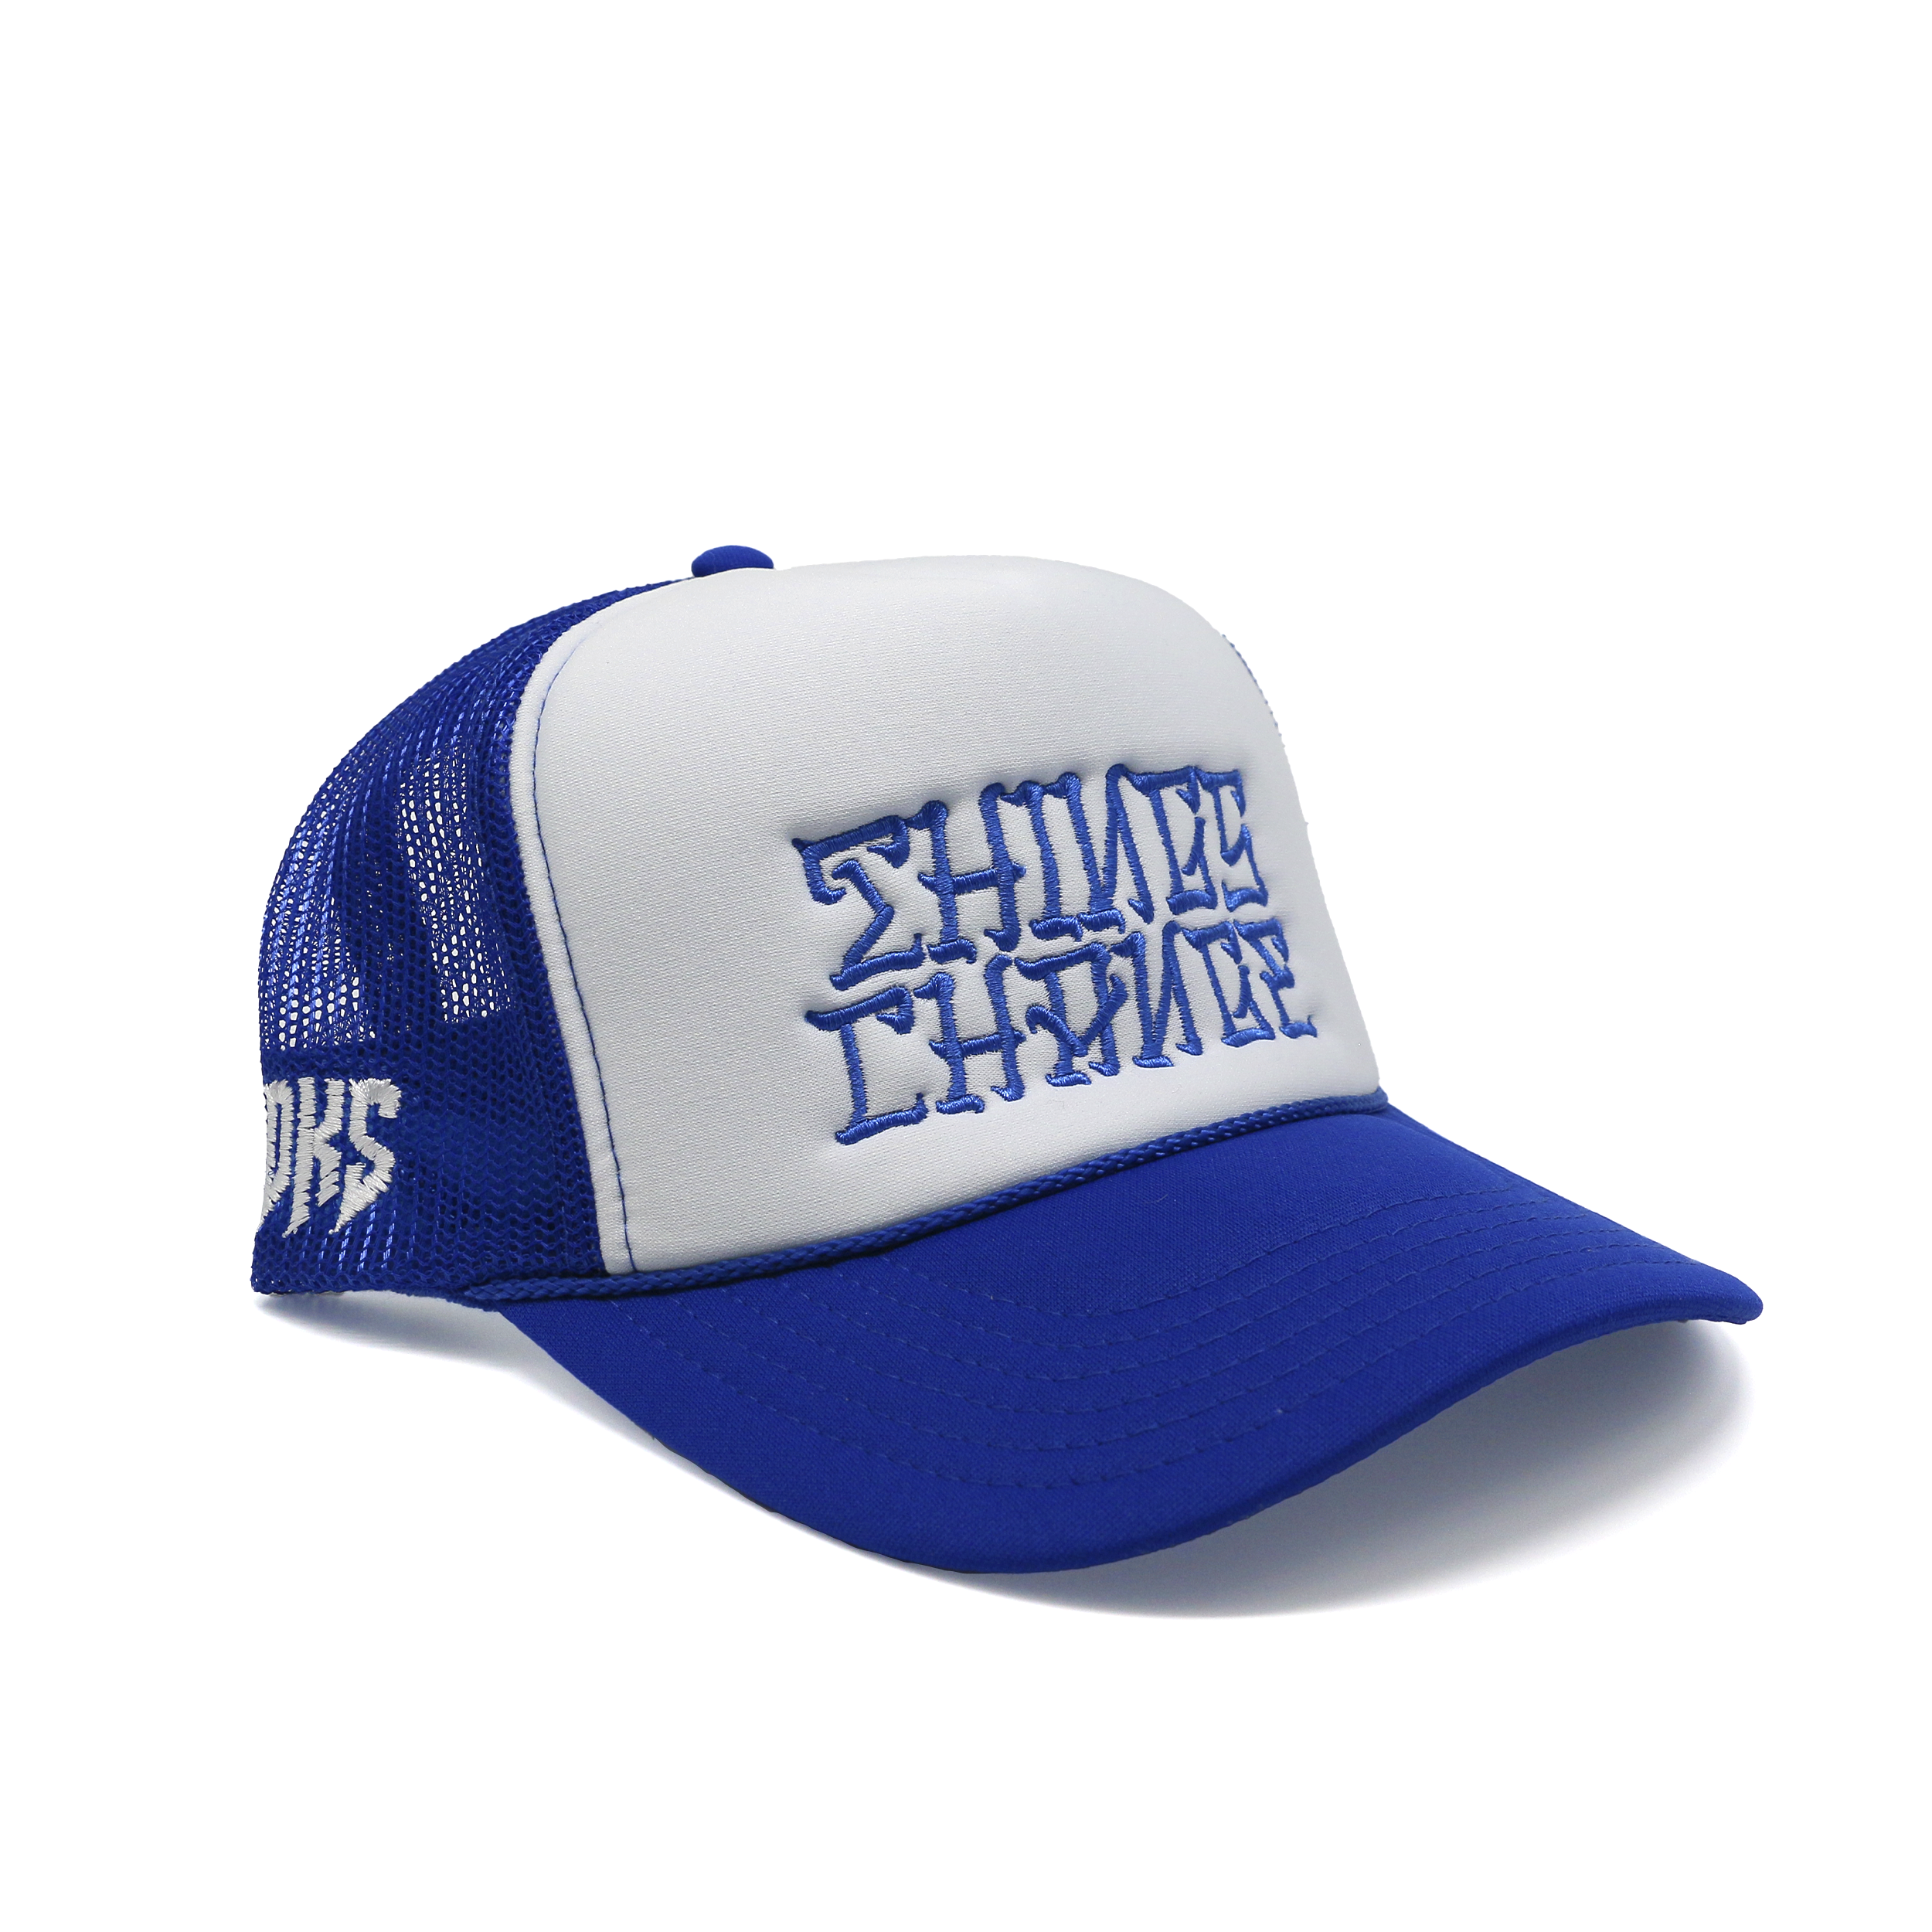 DKS "Things Change" Trucker Hat (Blue/White/Blue)